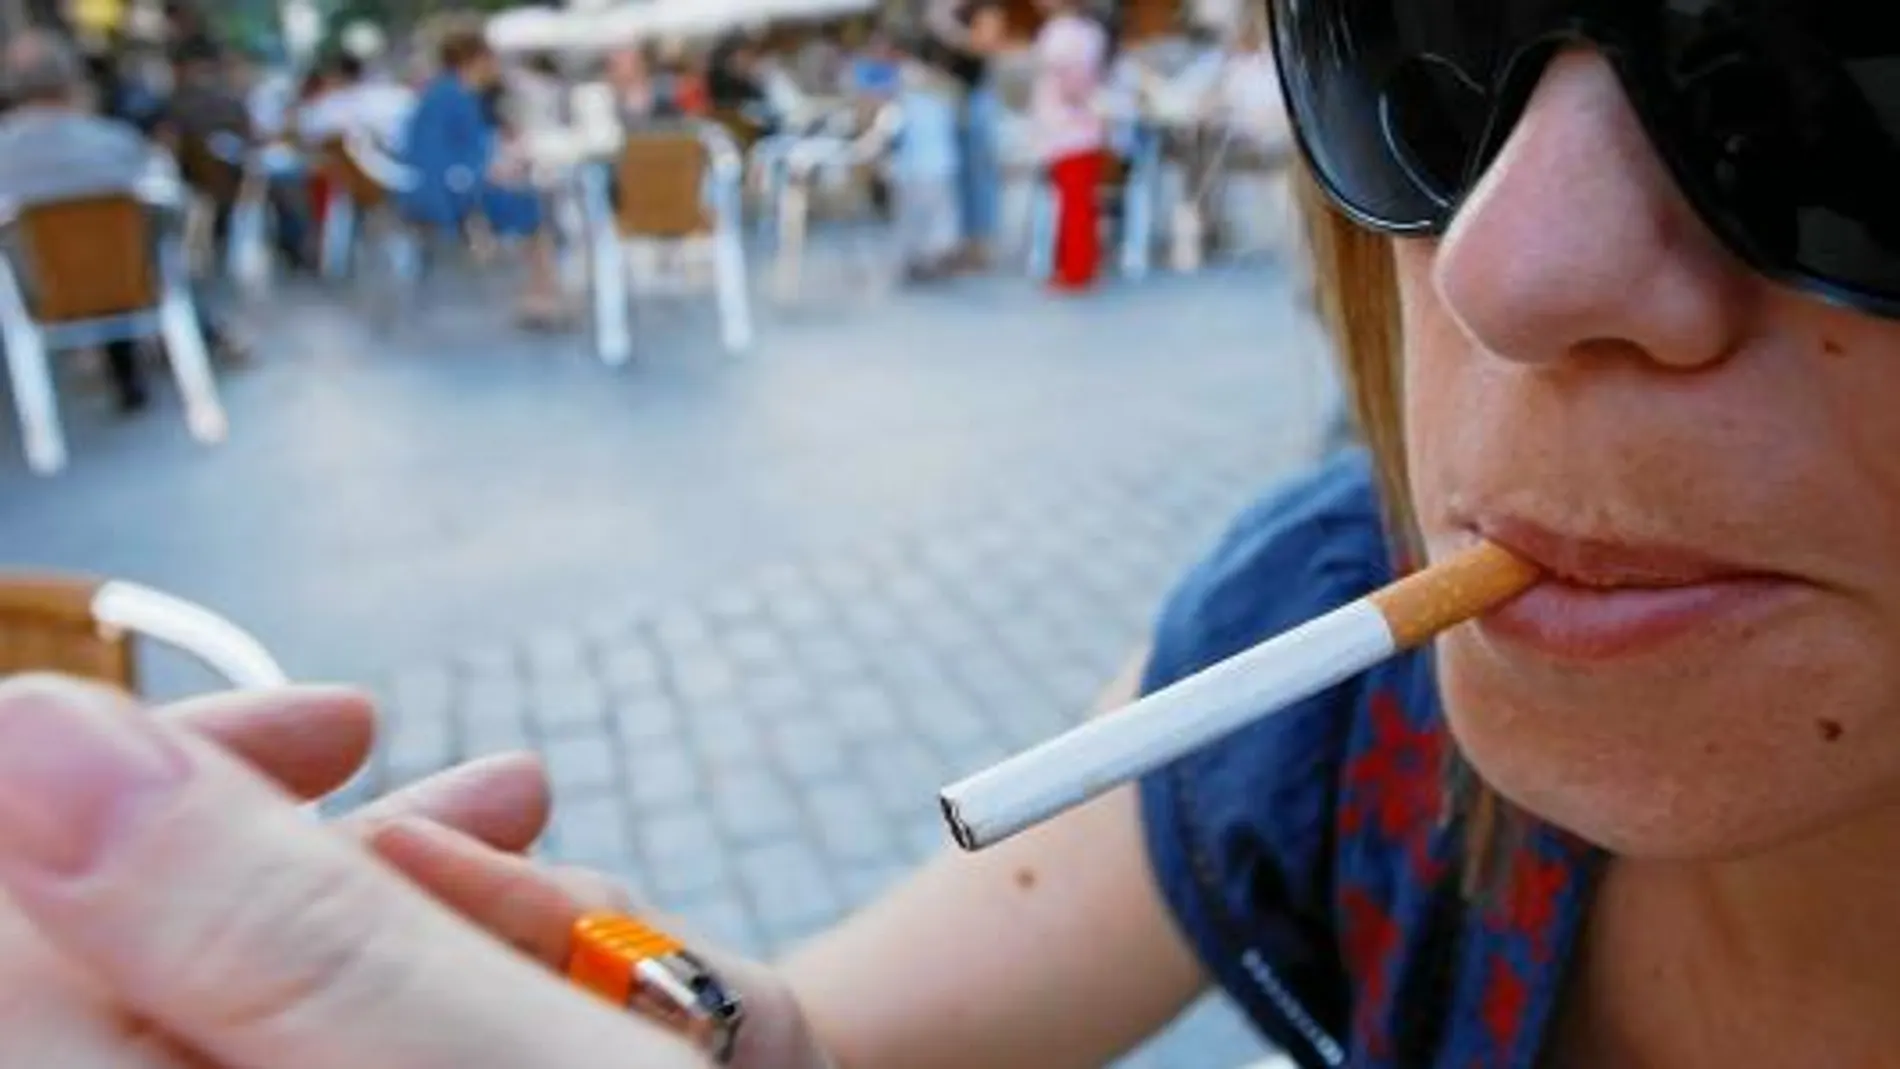 La nueva ley que prohibirá fumar en sitios públicos entrará en vigor a principios del próximo año